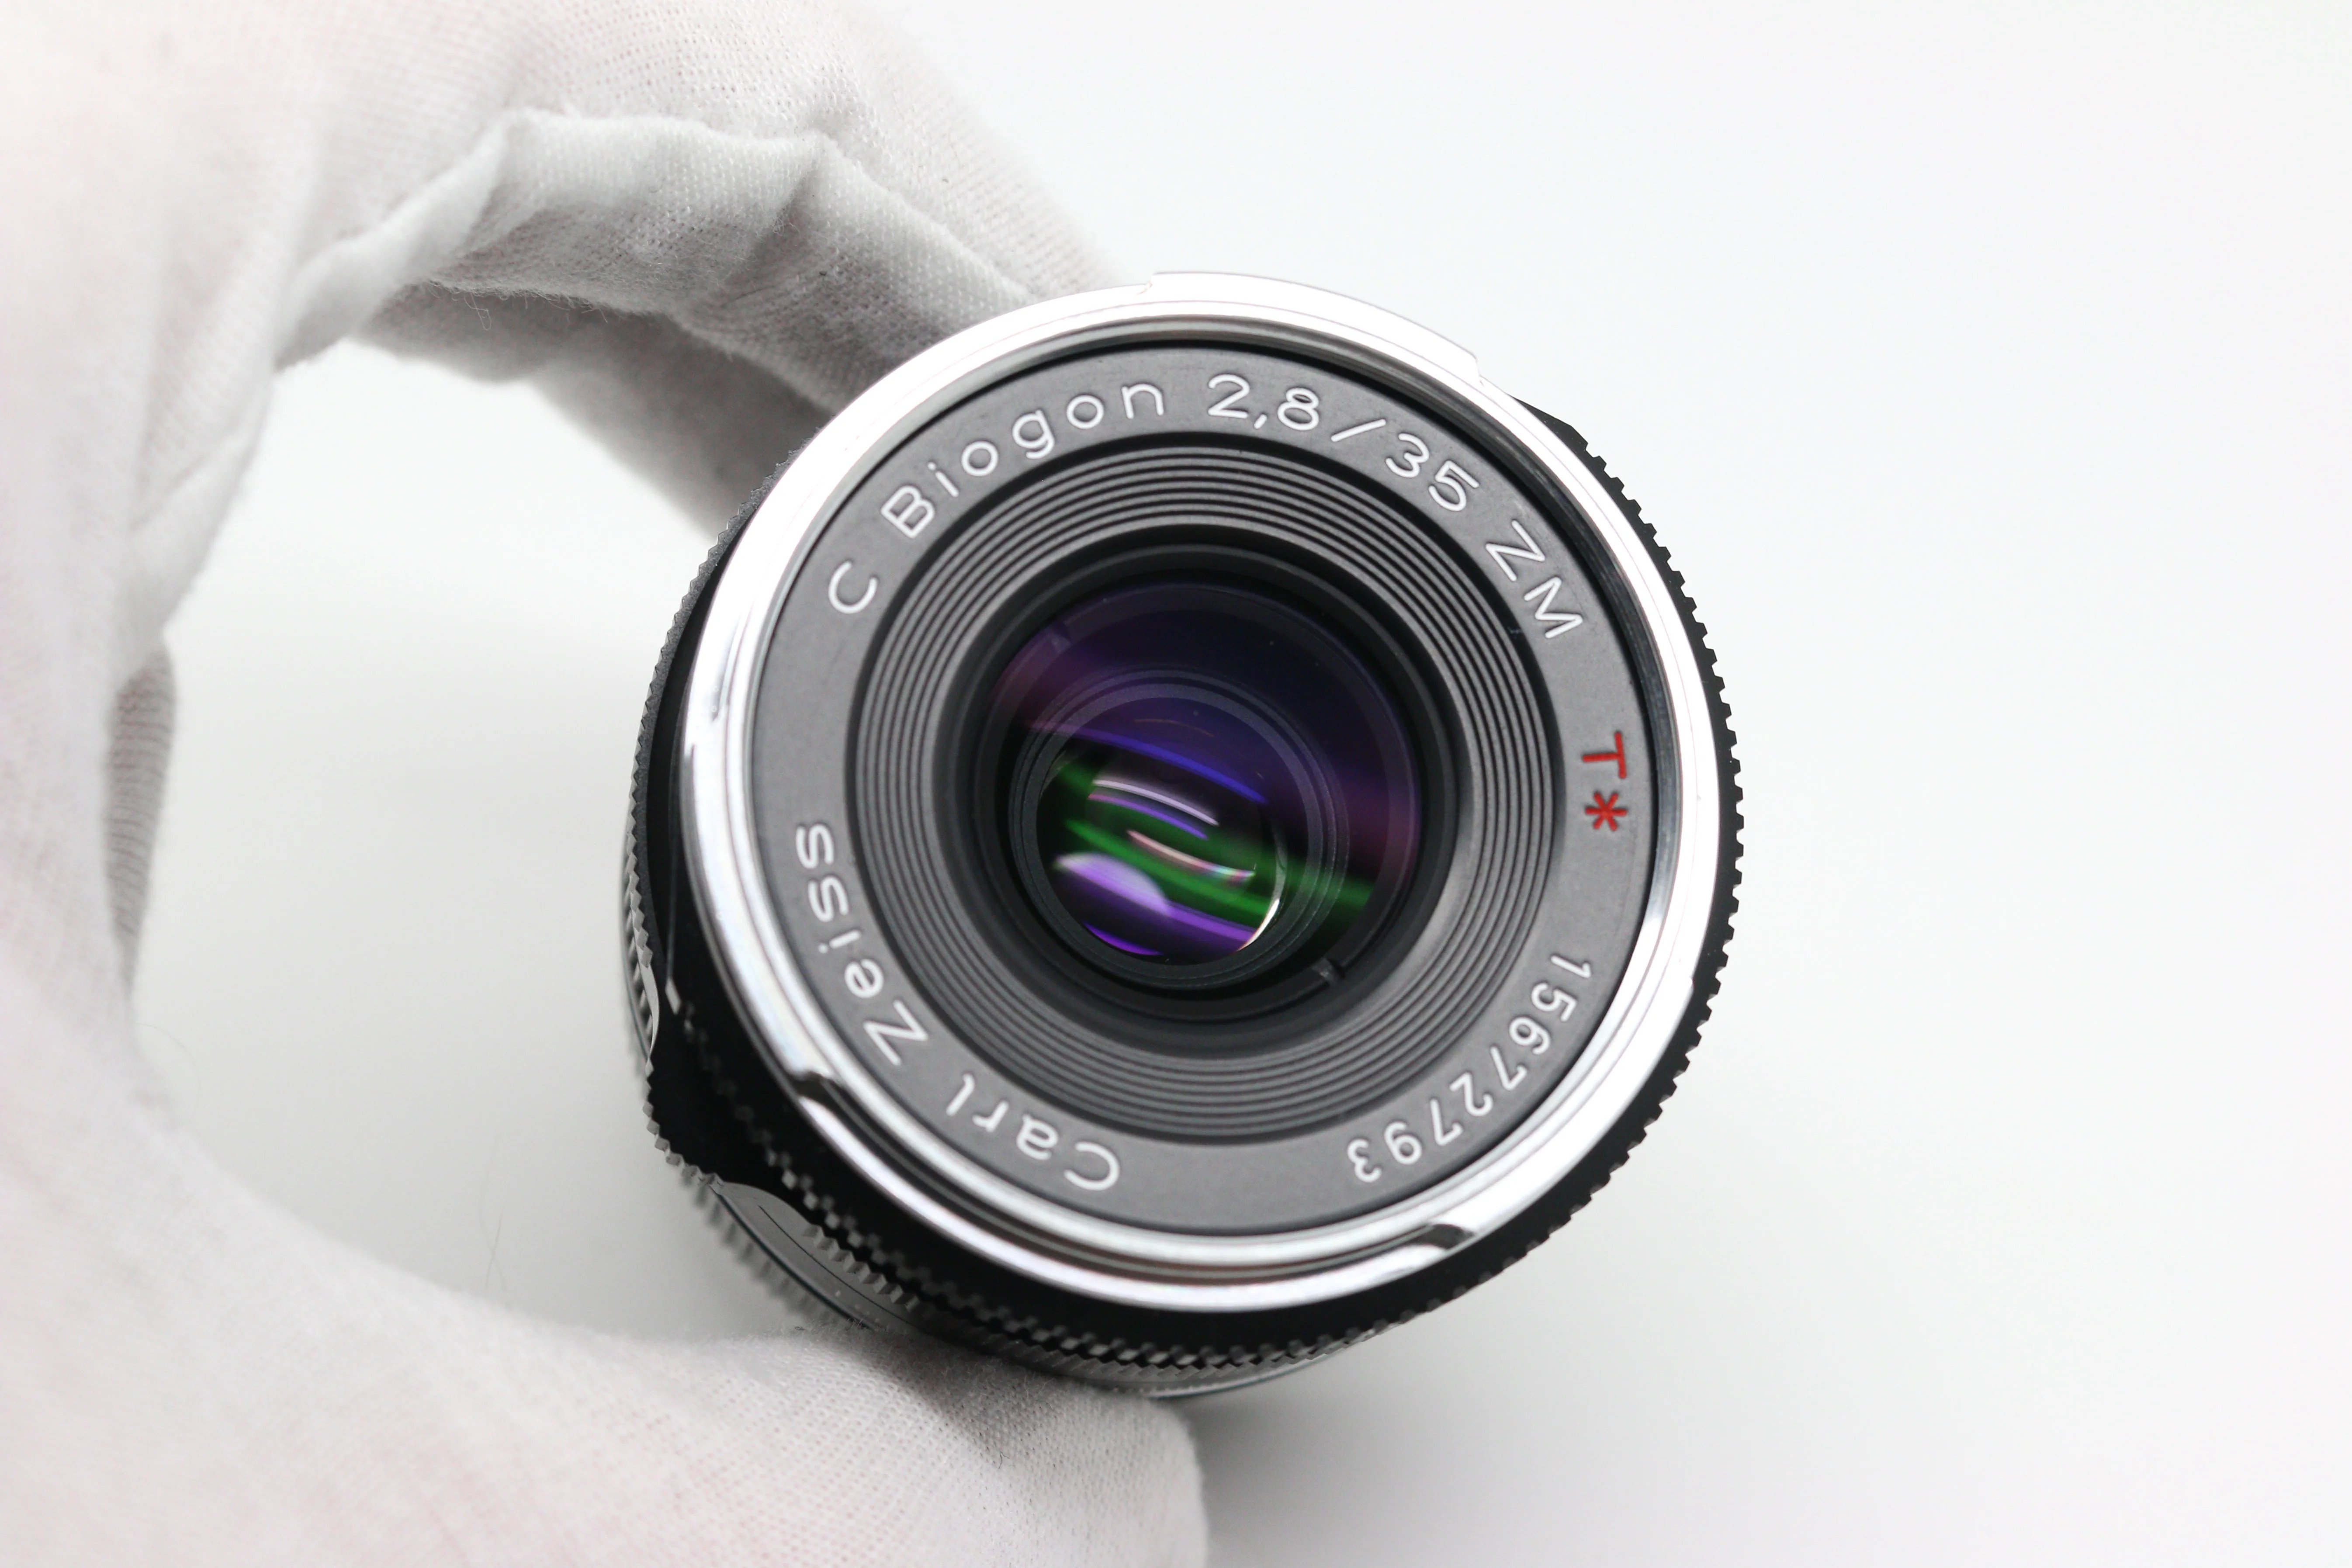 Carl Zeiss Biogon T 35mm F/2.8 ZM Lens for Leica M 305c